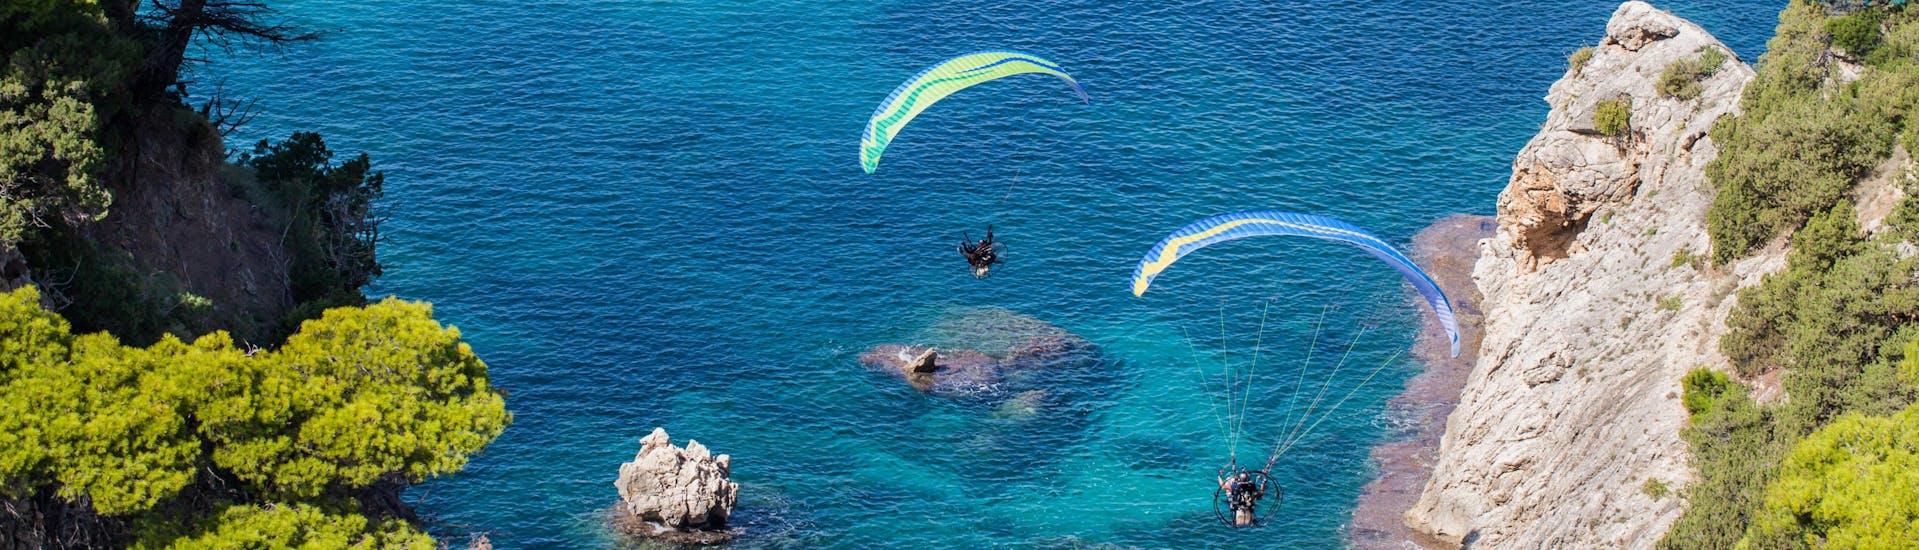 Avdou: Een tandemvlucht vindt plaats in een van de hotspots voor paragliding.